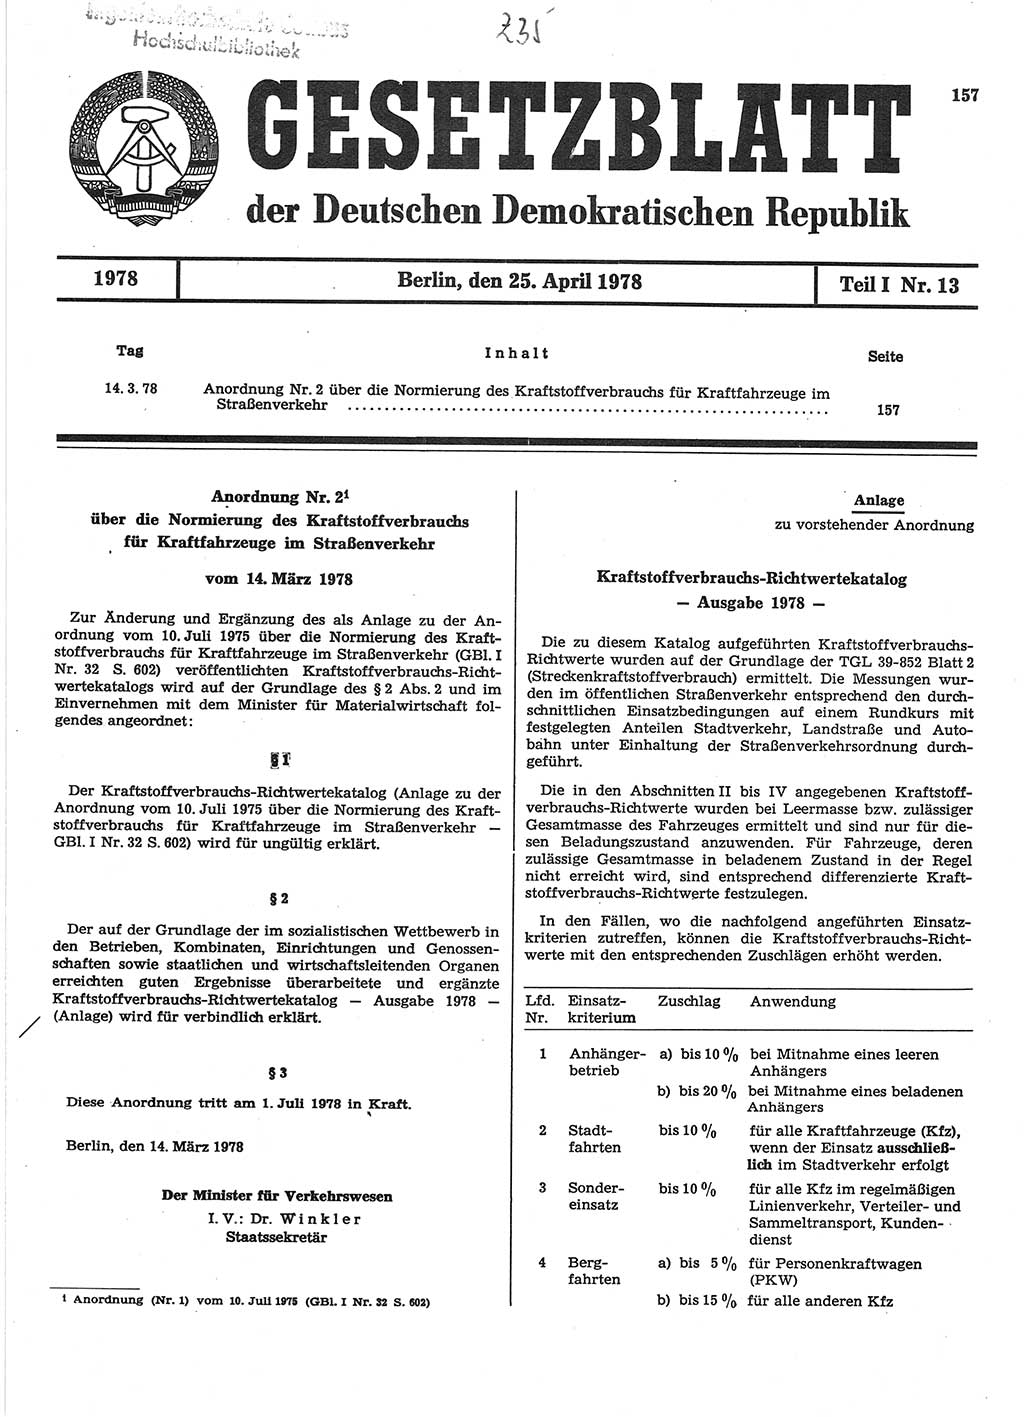 Gesetzblatt (GBl.) der Deutschen Demokratischen Republik (DDR) Teil Ⅰ 1978, Seite 157 (GBl. DDR Ⅰ 1978, S. 157)